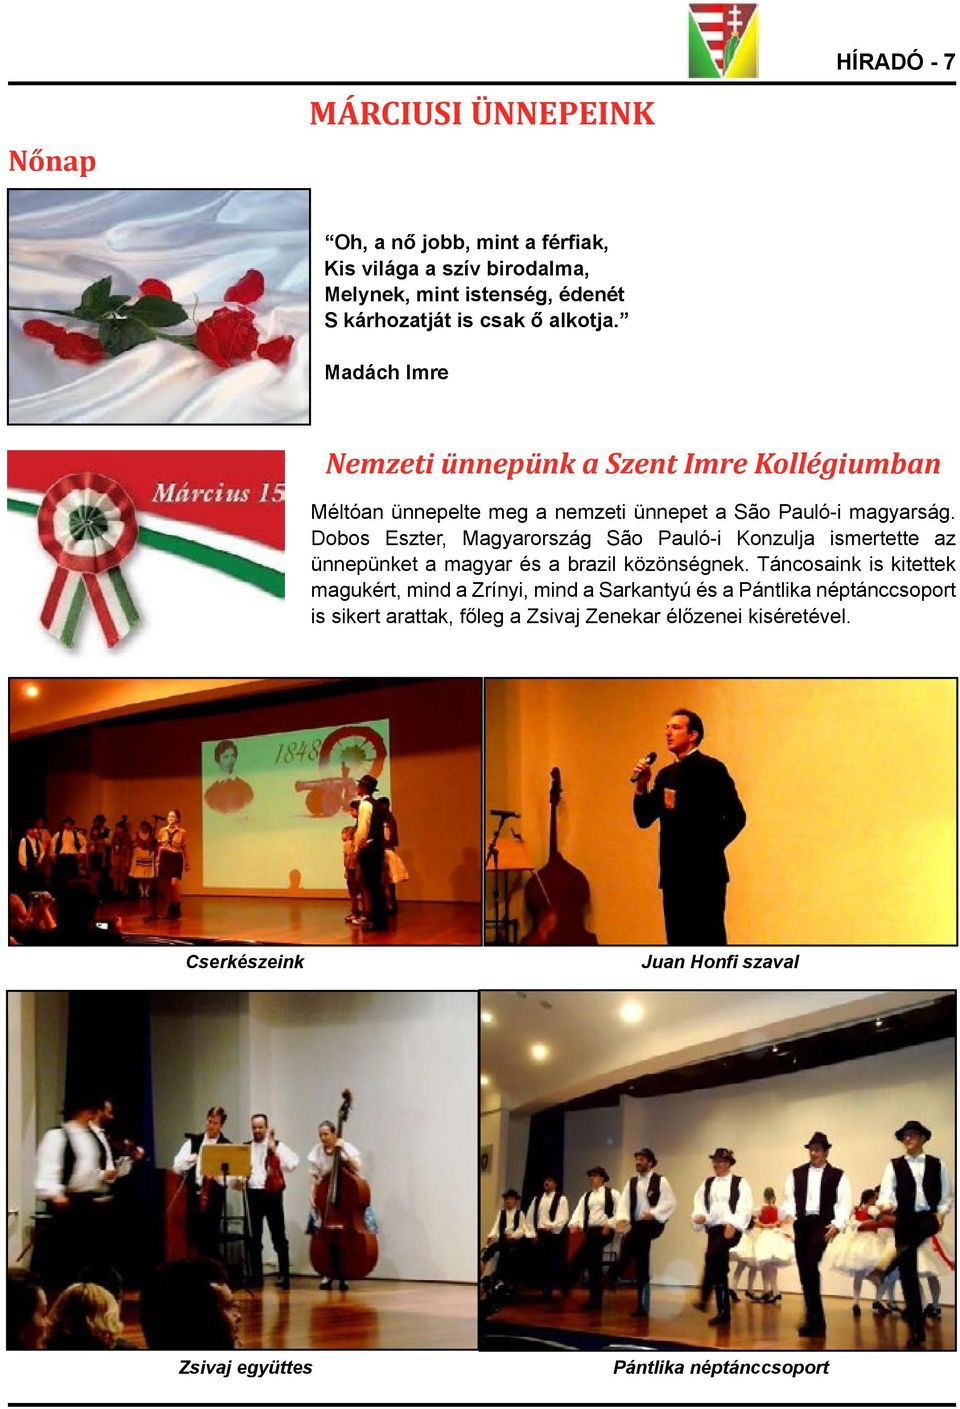 Dobos Eszter, Magyarország São Pauló-i Konzulja ismertette az ünnepünket a magyar és a brazil közönségnek.